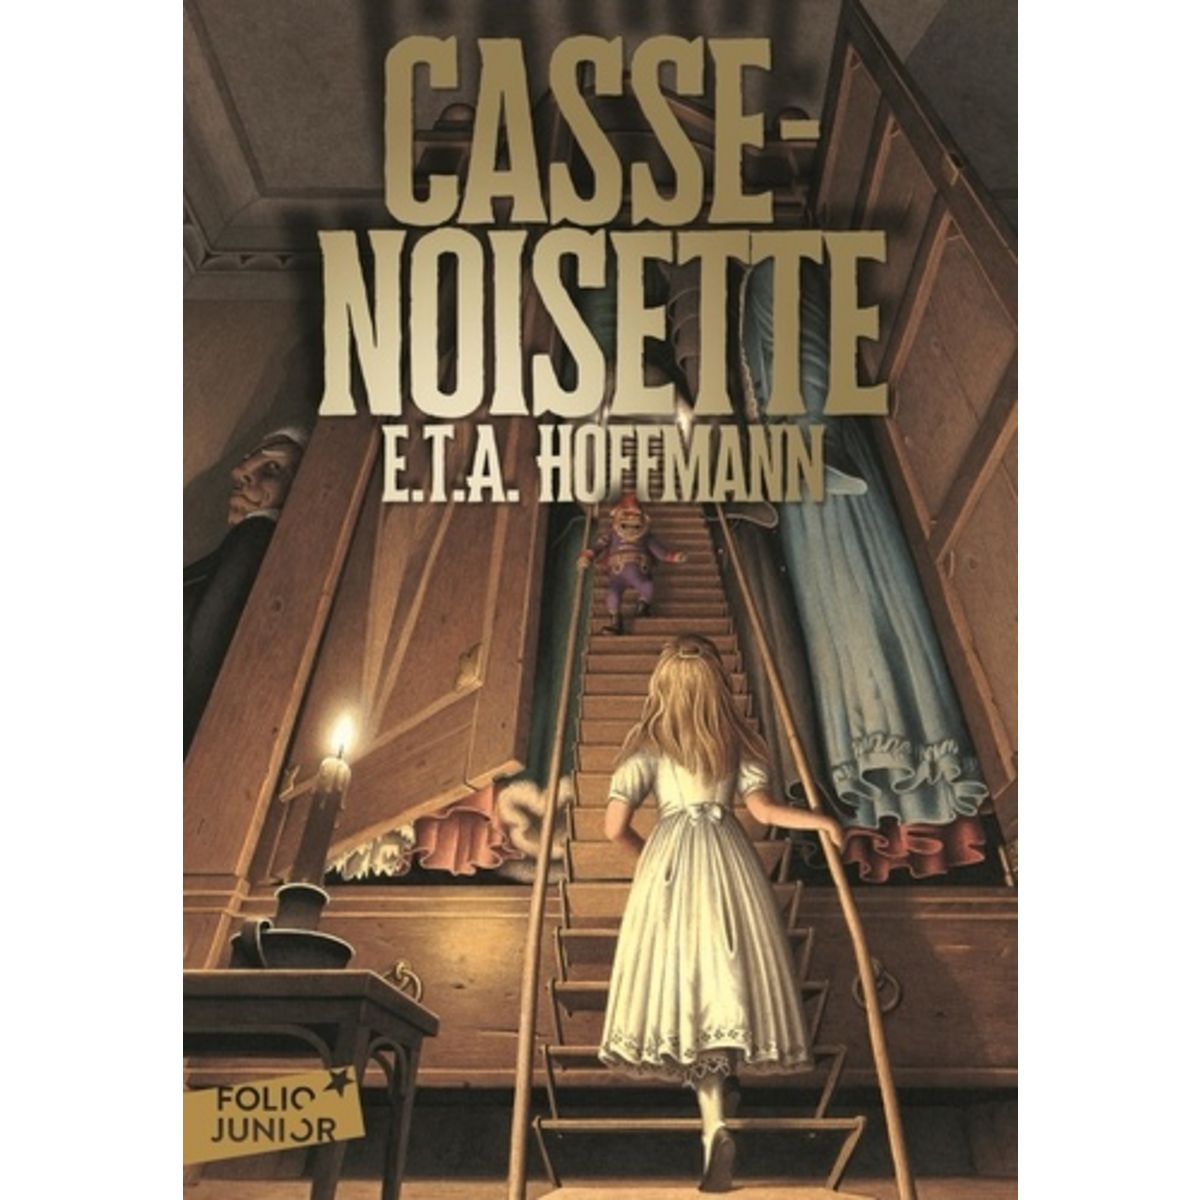  CASSE-NOISETTE, Hoffmann Ernst Theodor Amadeus